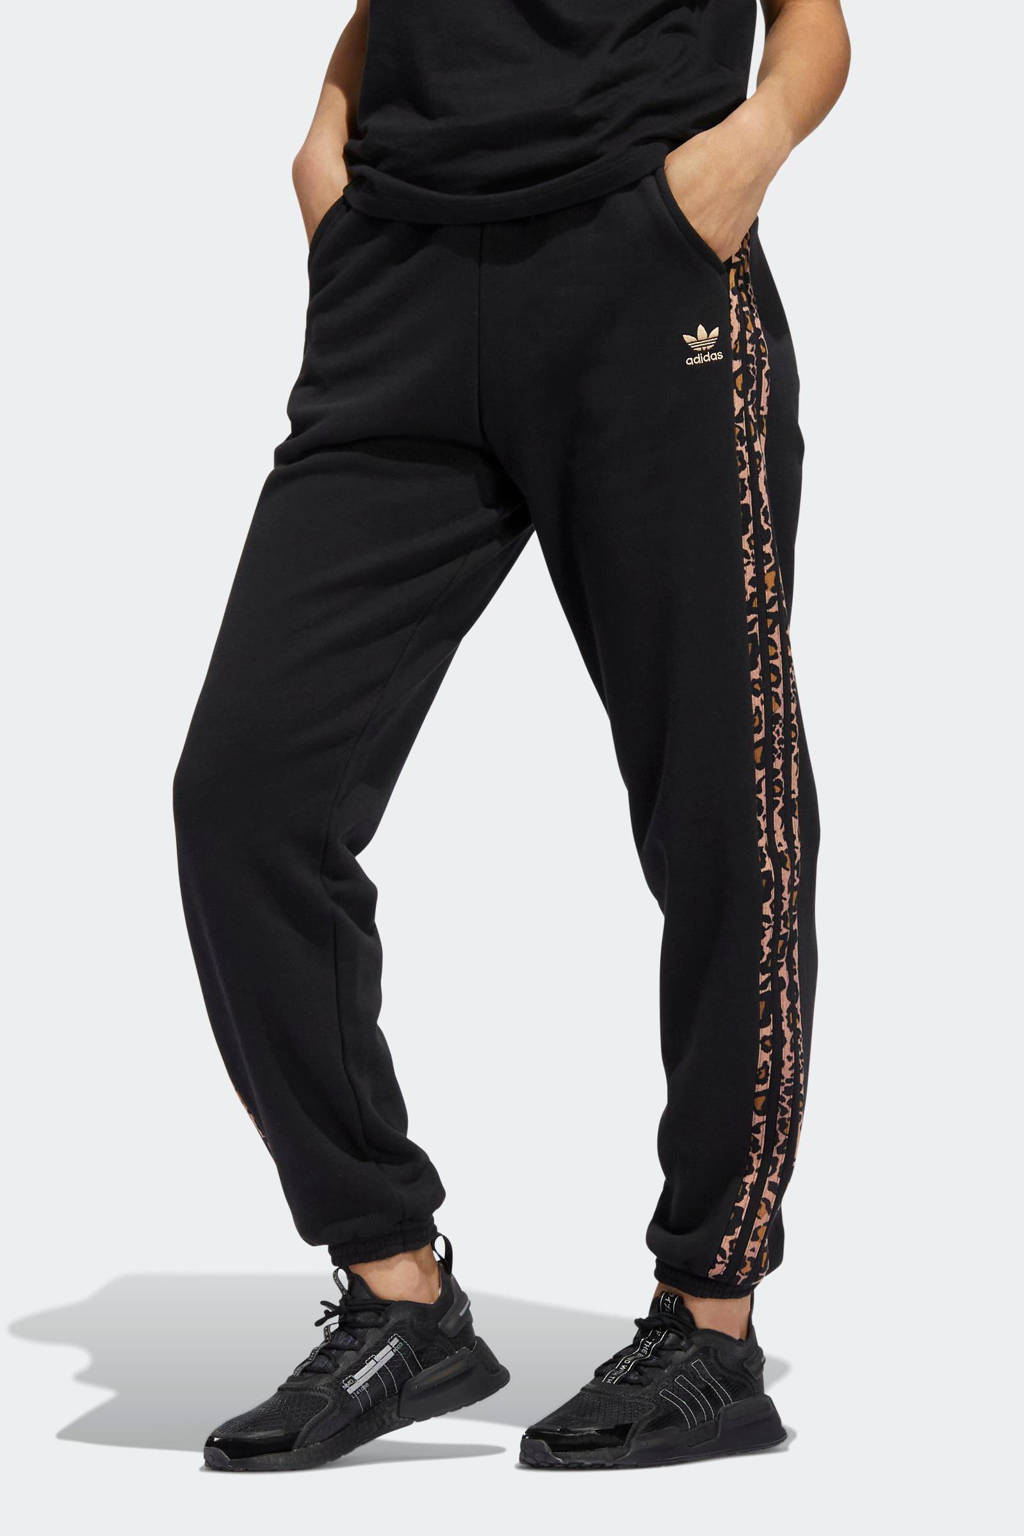 adidas Originals Adicolor joggingbroek zwart/tijgerprint wehkamp